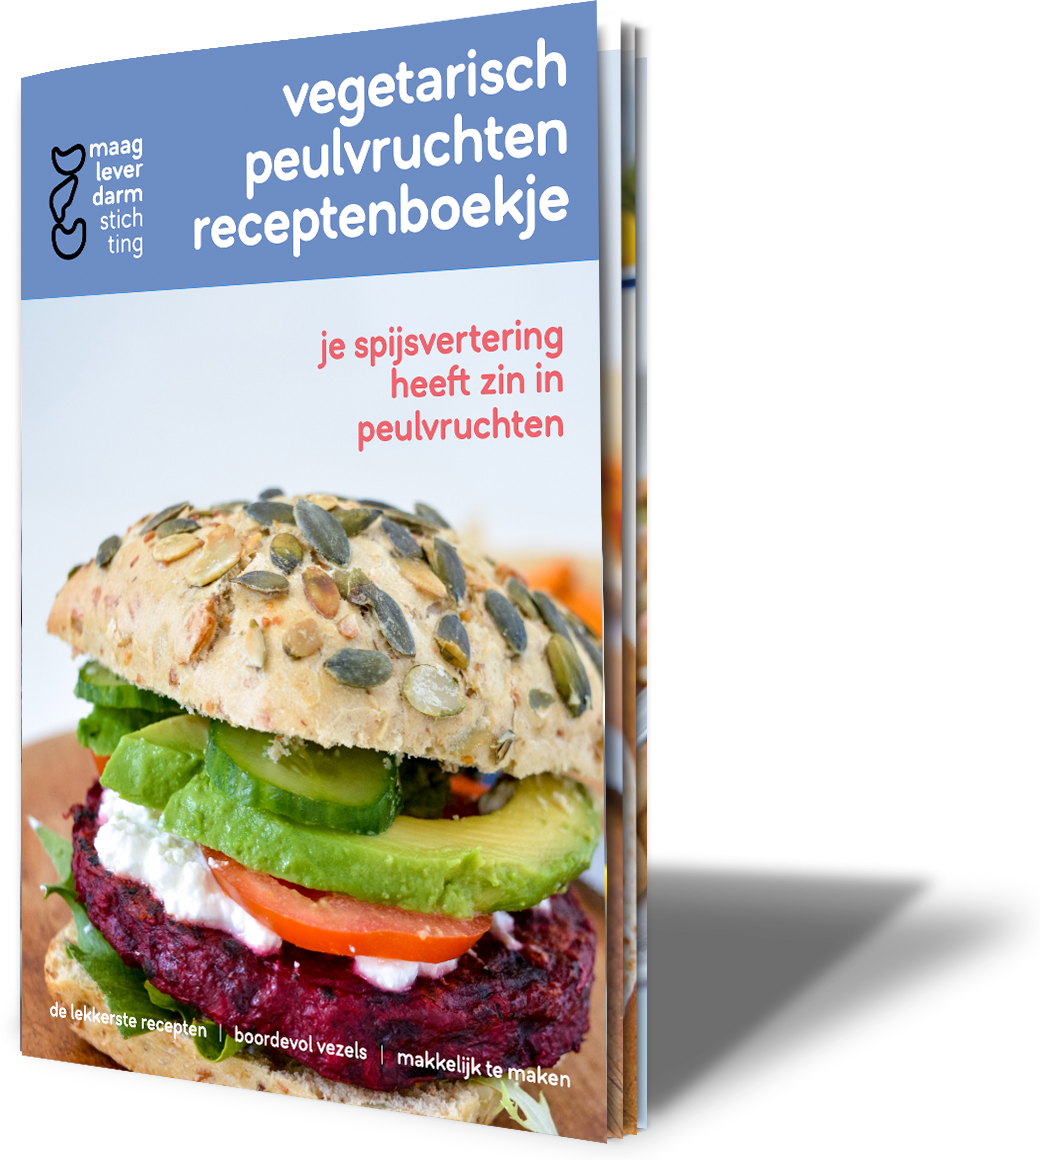 https://www.mlds.nl/content/uploads/Mockup-peulvruchten-vegetarisch-receptenboek.png